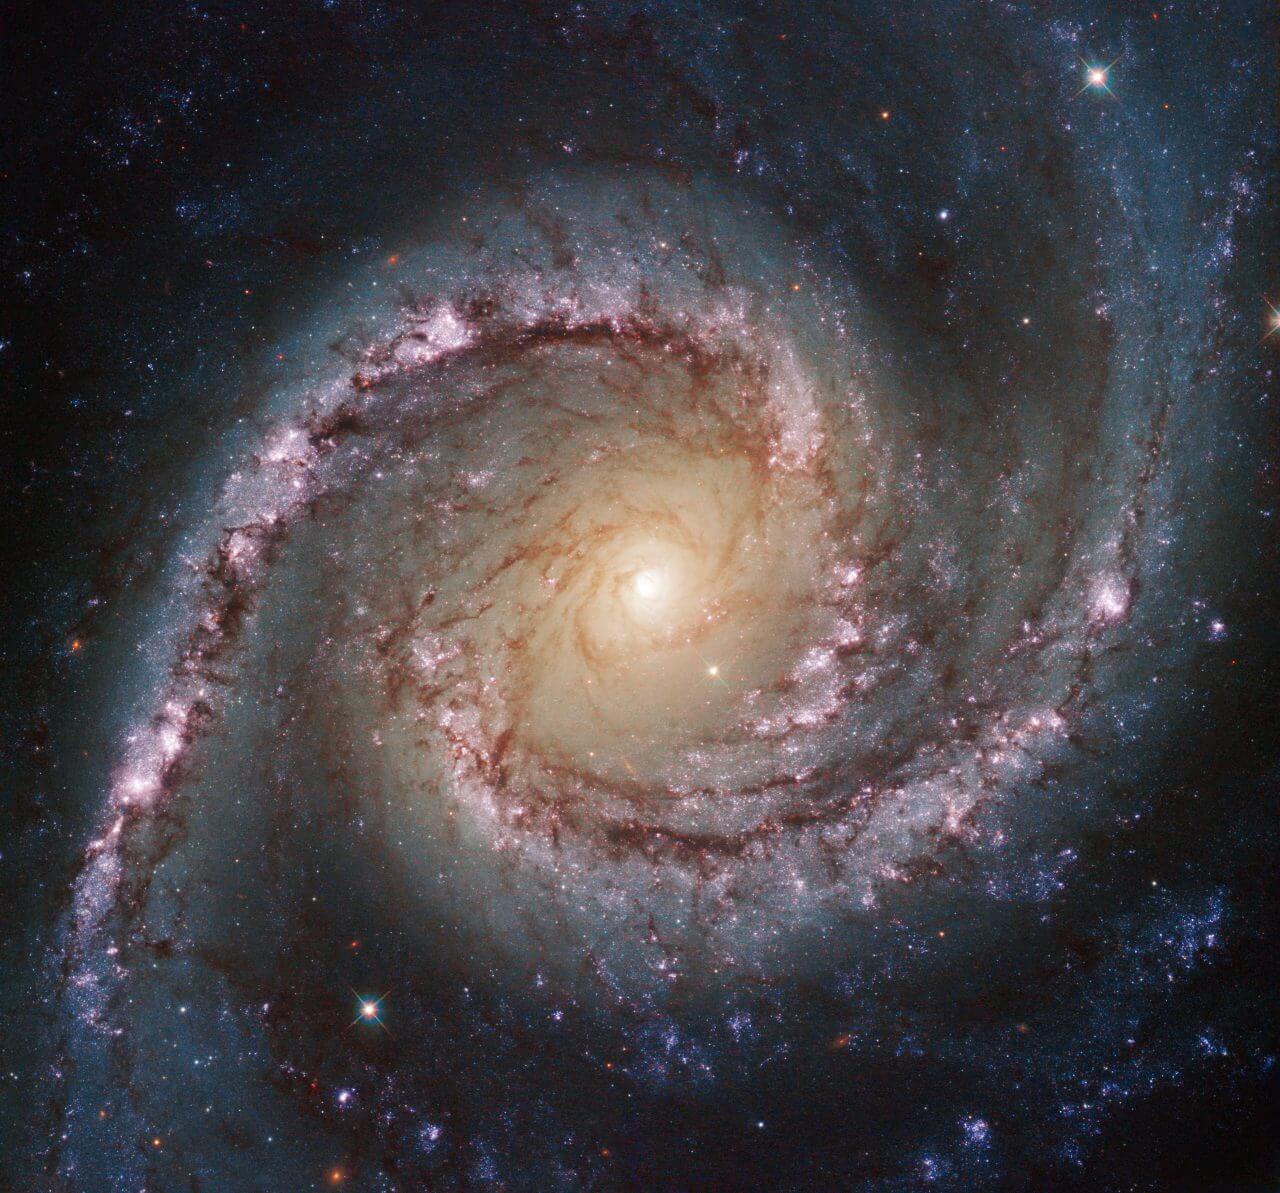 【▲ 渦巻銀河「NGC 1566」（Credit: ESA/Hubble & NASA; Acknowledgement: Flickr user Det58）】